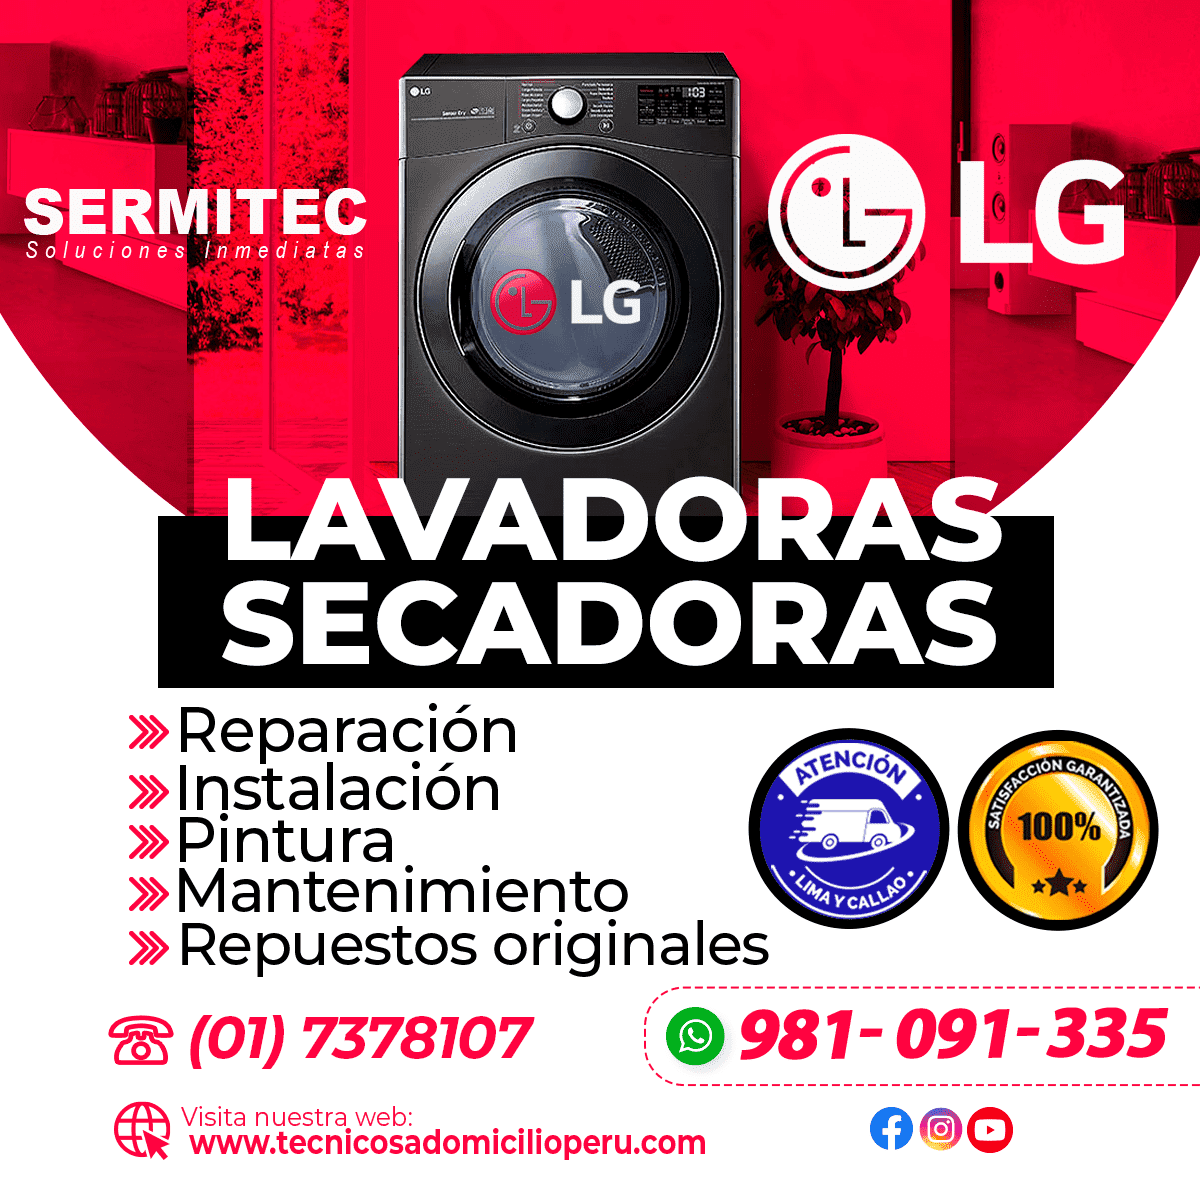 LG Reparacion de Lavadoras 981091335 SURCO